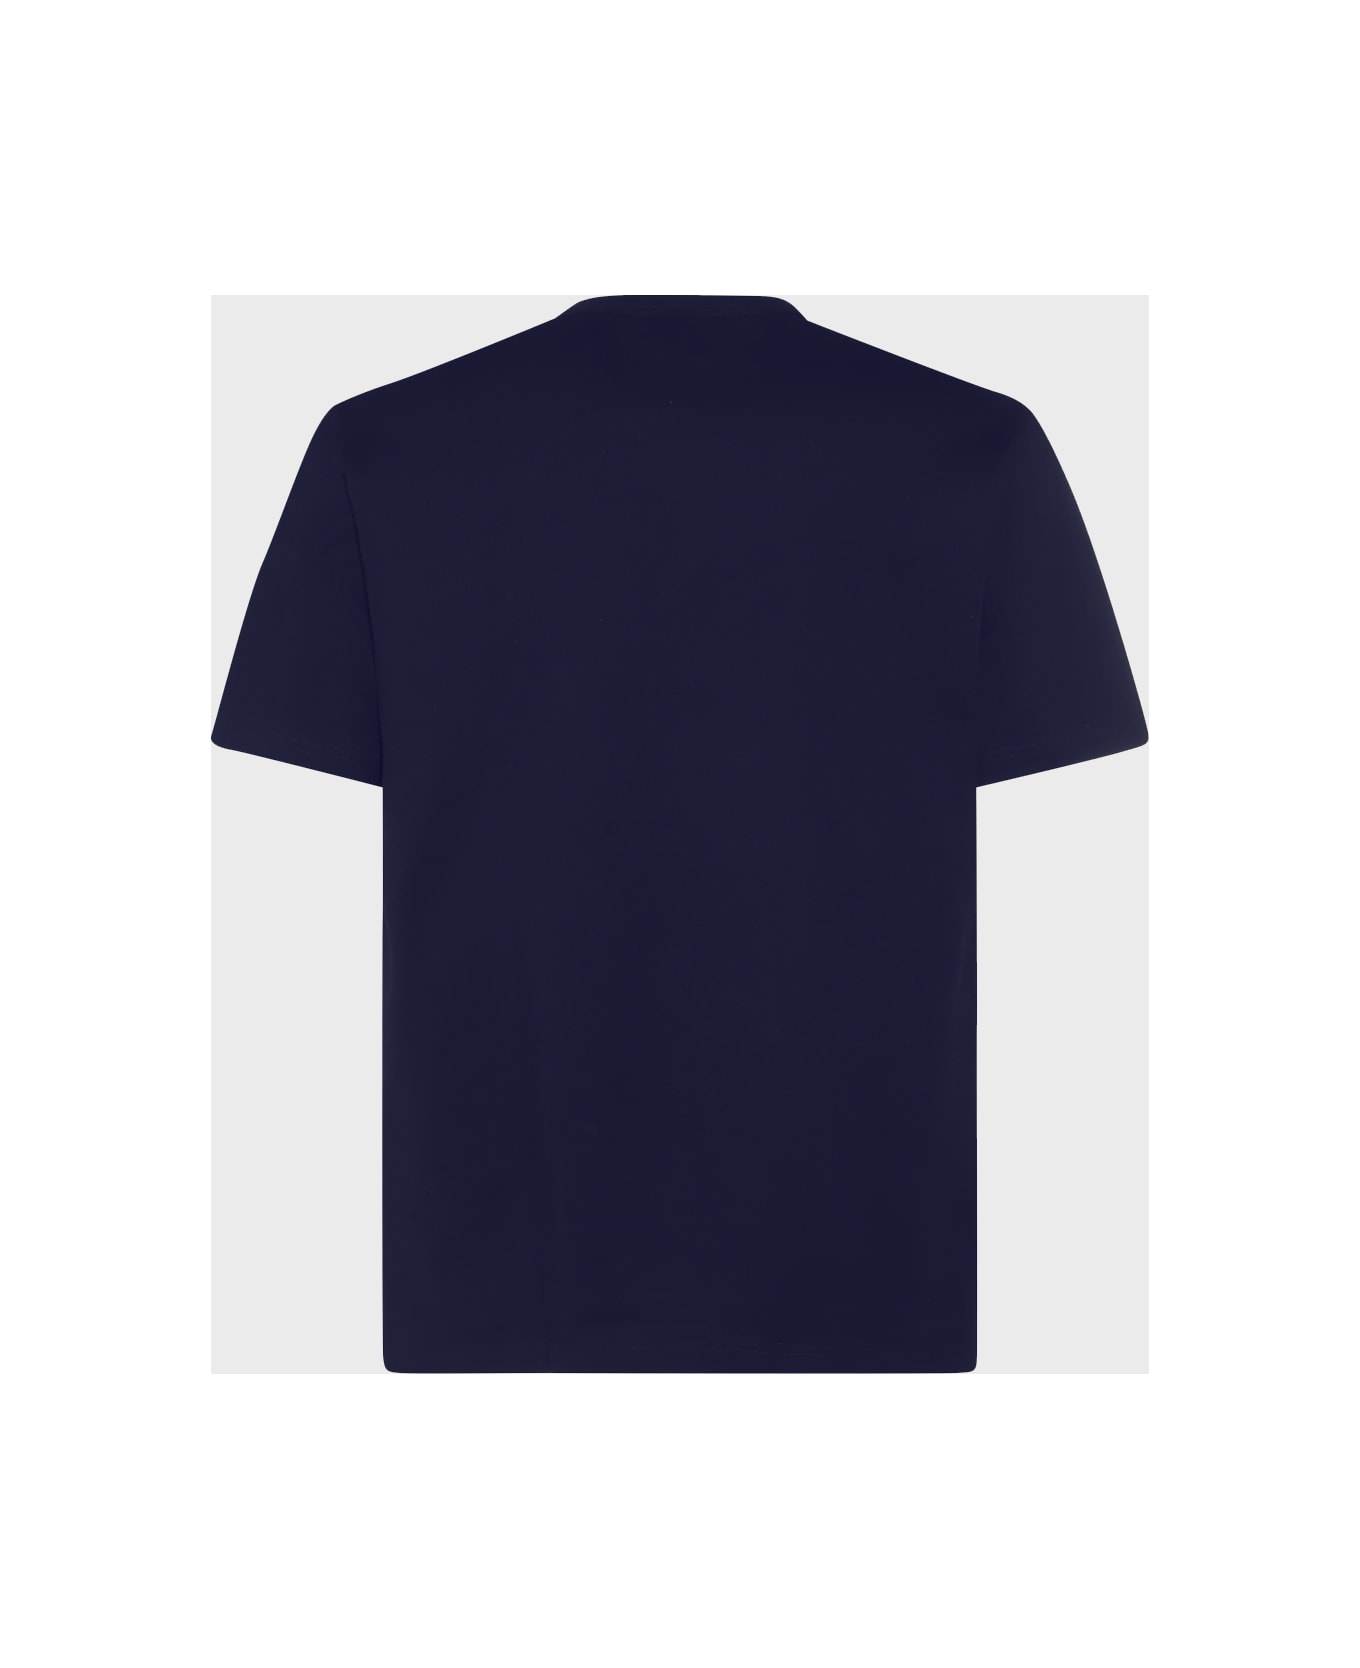 Comme des Garçons Homme Navy Cotton T-shirt - Blue シャツ